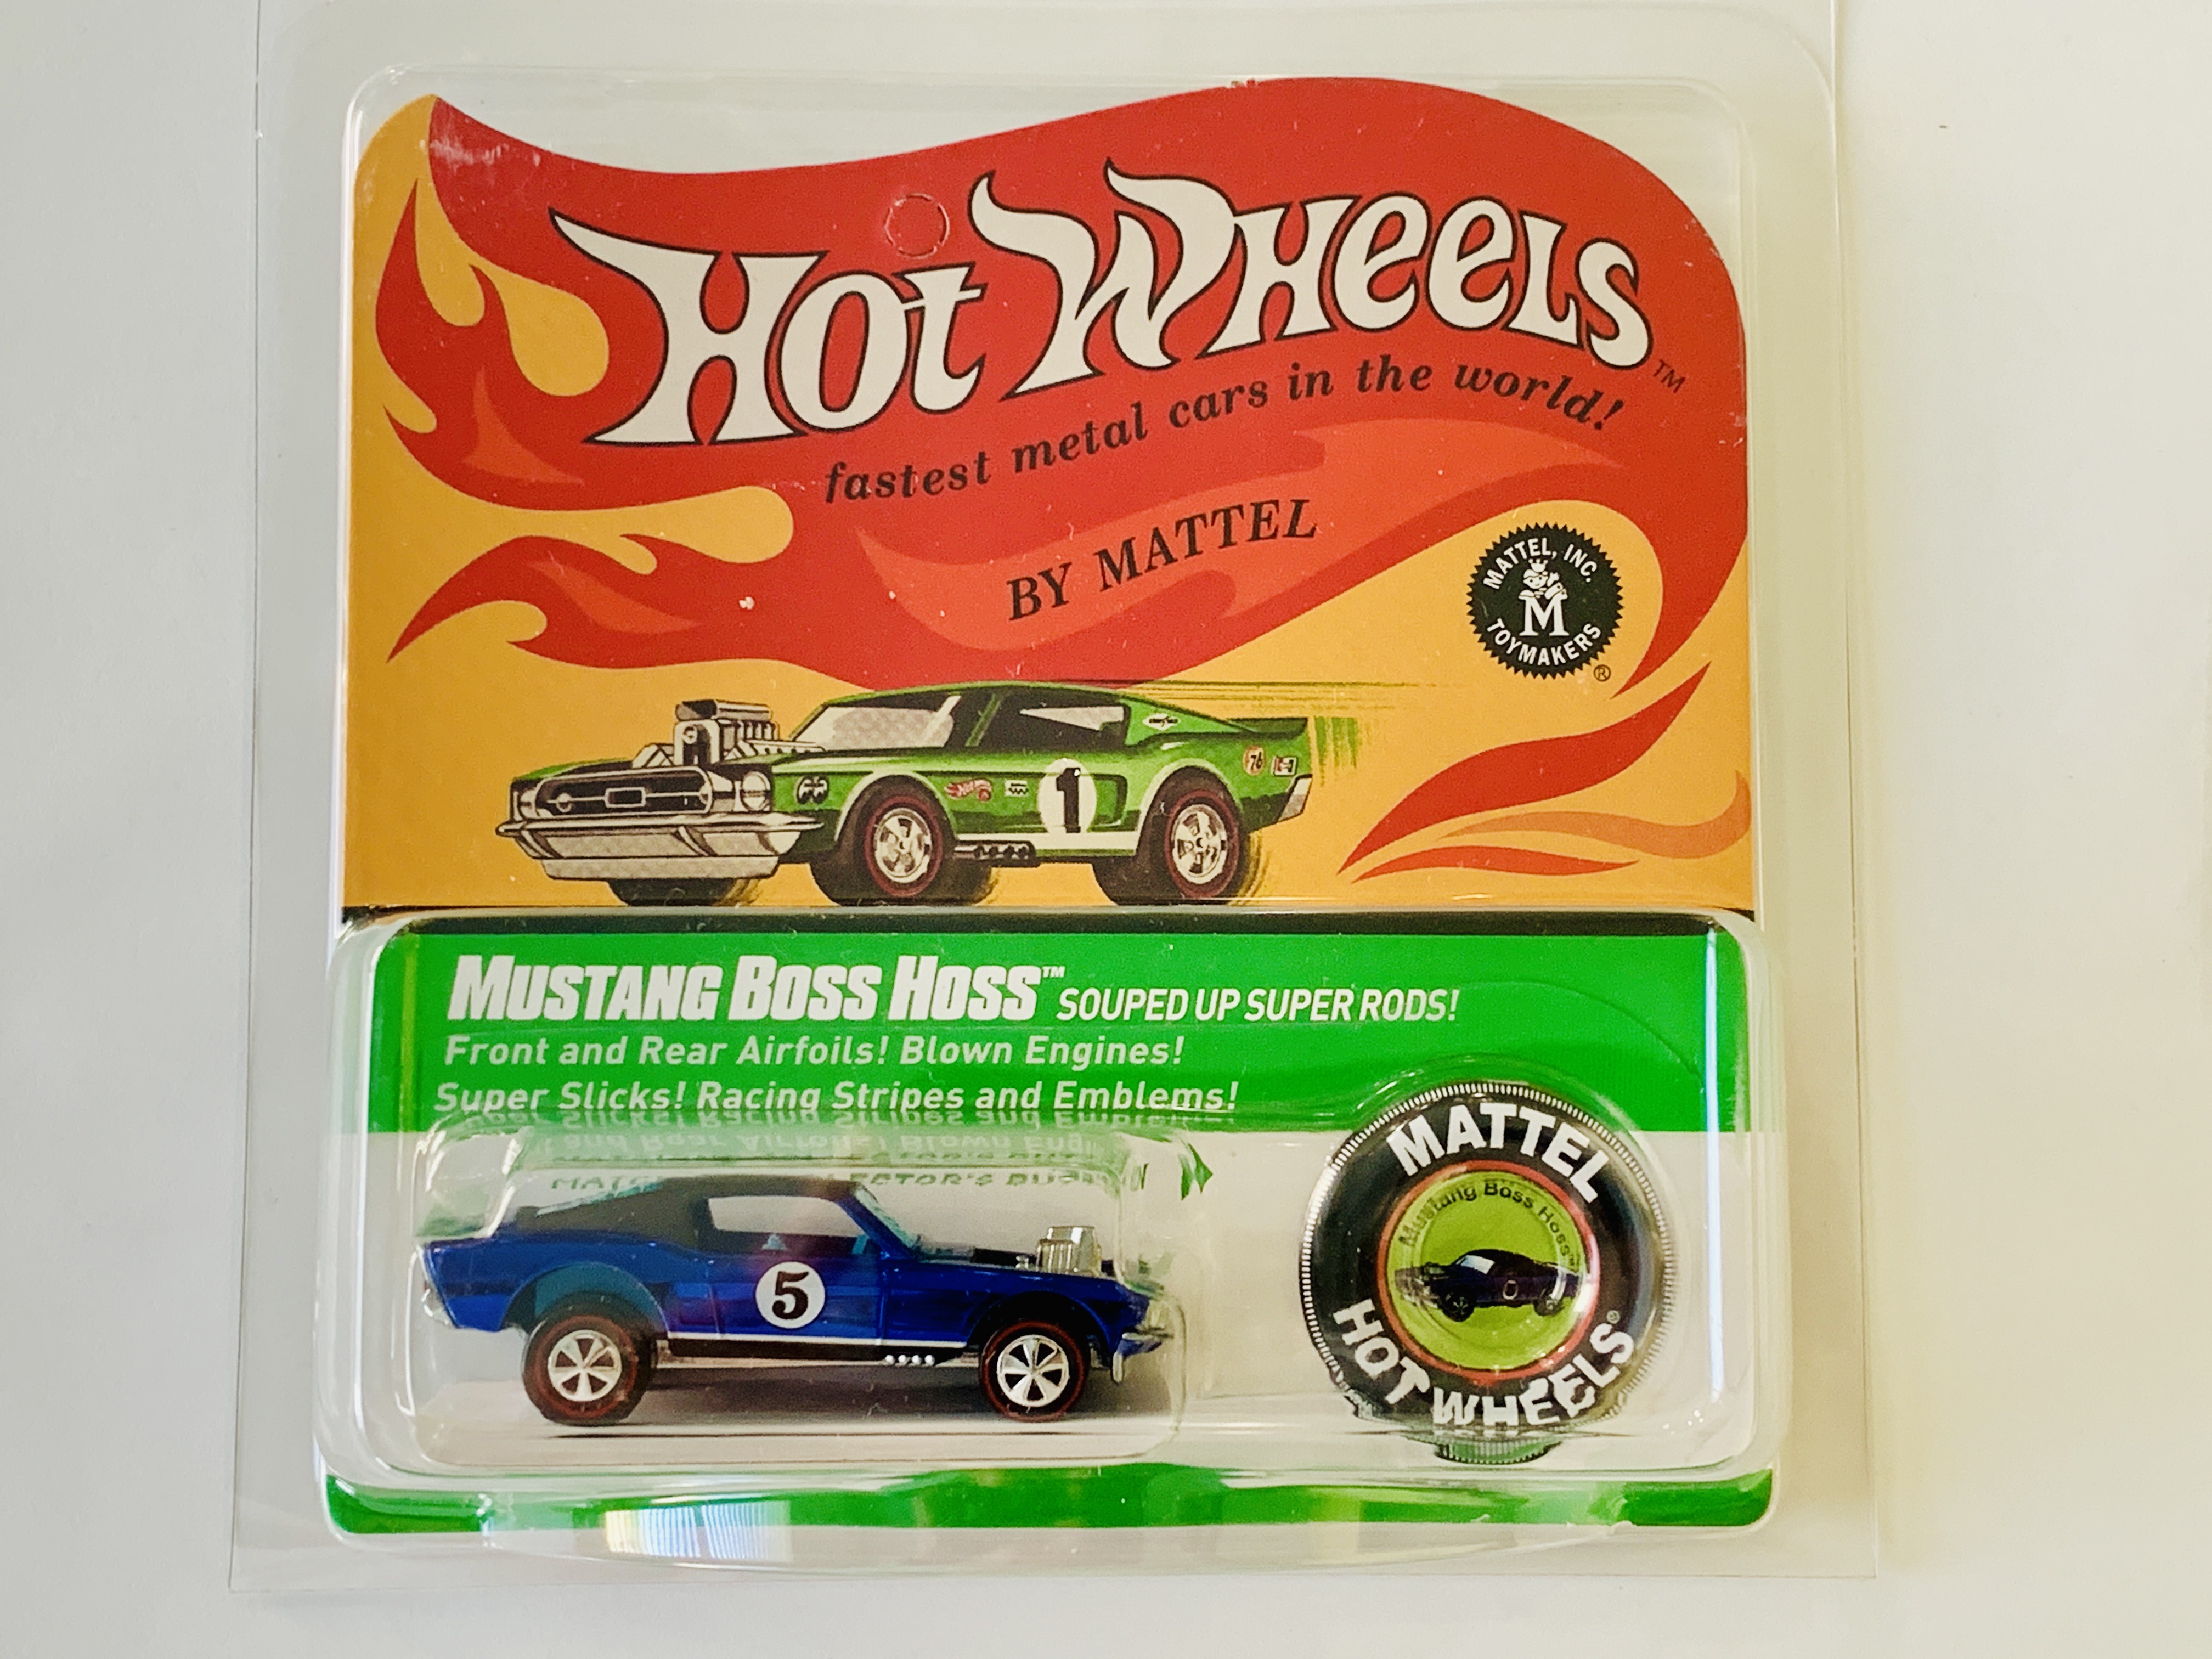 spansk eksplosion fokus Hot Wheels Redline Club The Spoilers Mustang Boss Hoss - 6217/8000